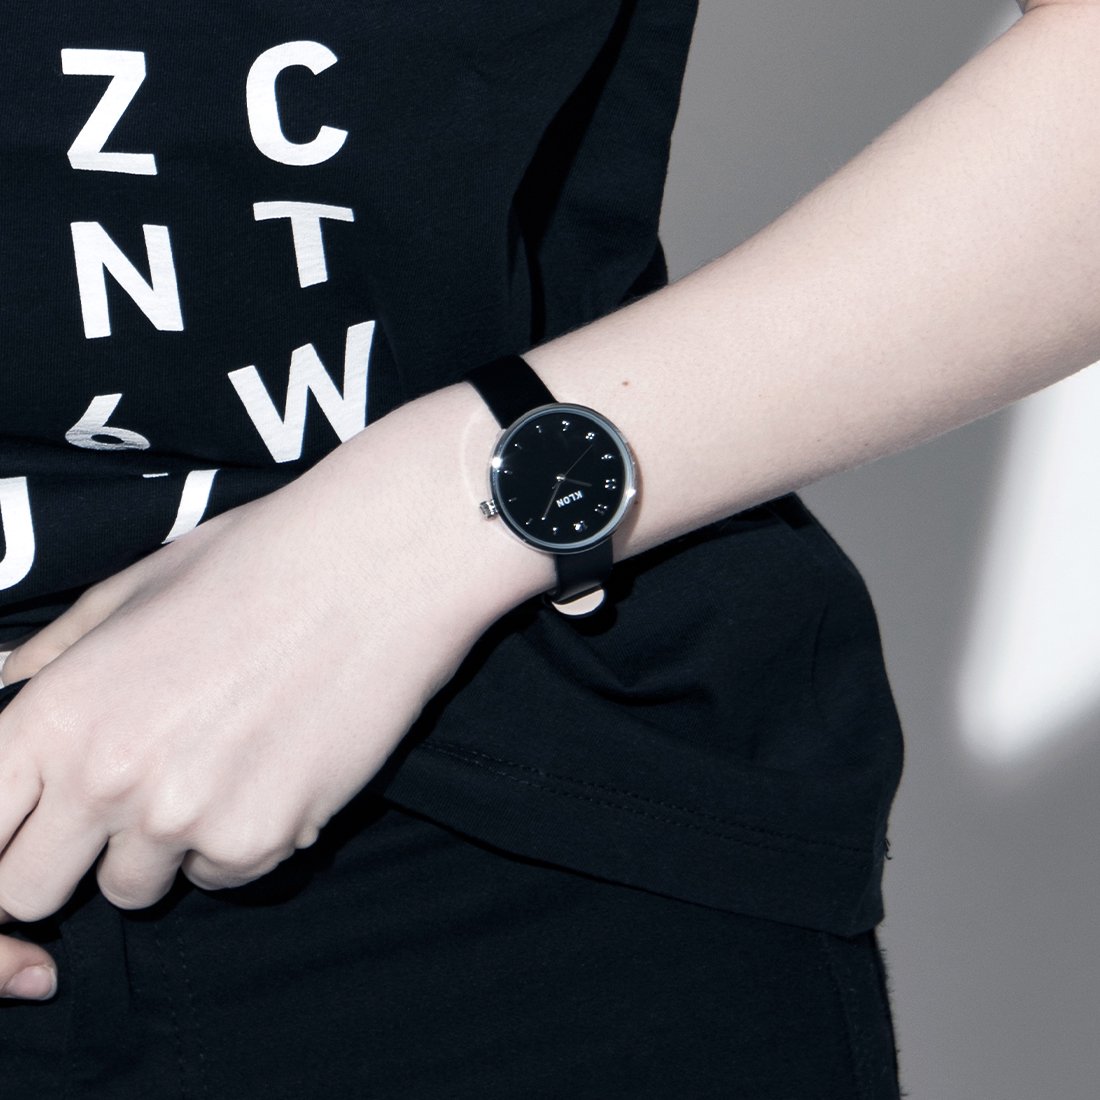 【組合せ商品】KLON CONNECTION ELFIN BLACK×【BLACK SURFACE】(FIRST:38mm×LATTER:33mm) カジュアル 腕時計